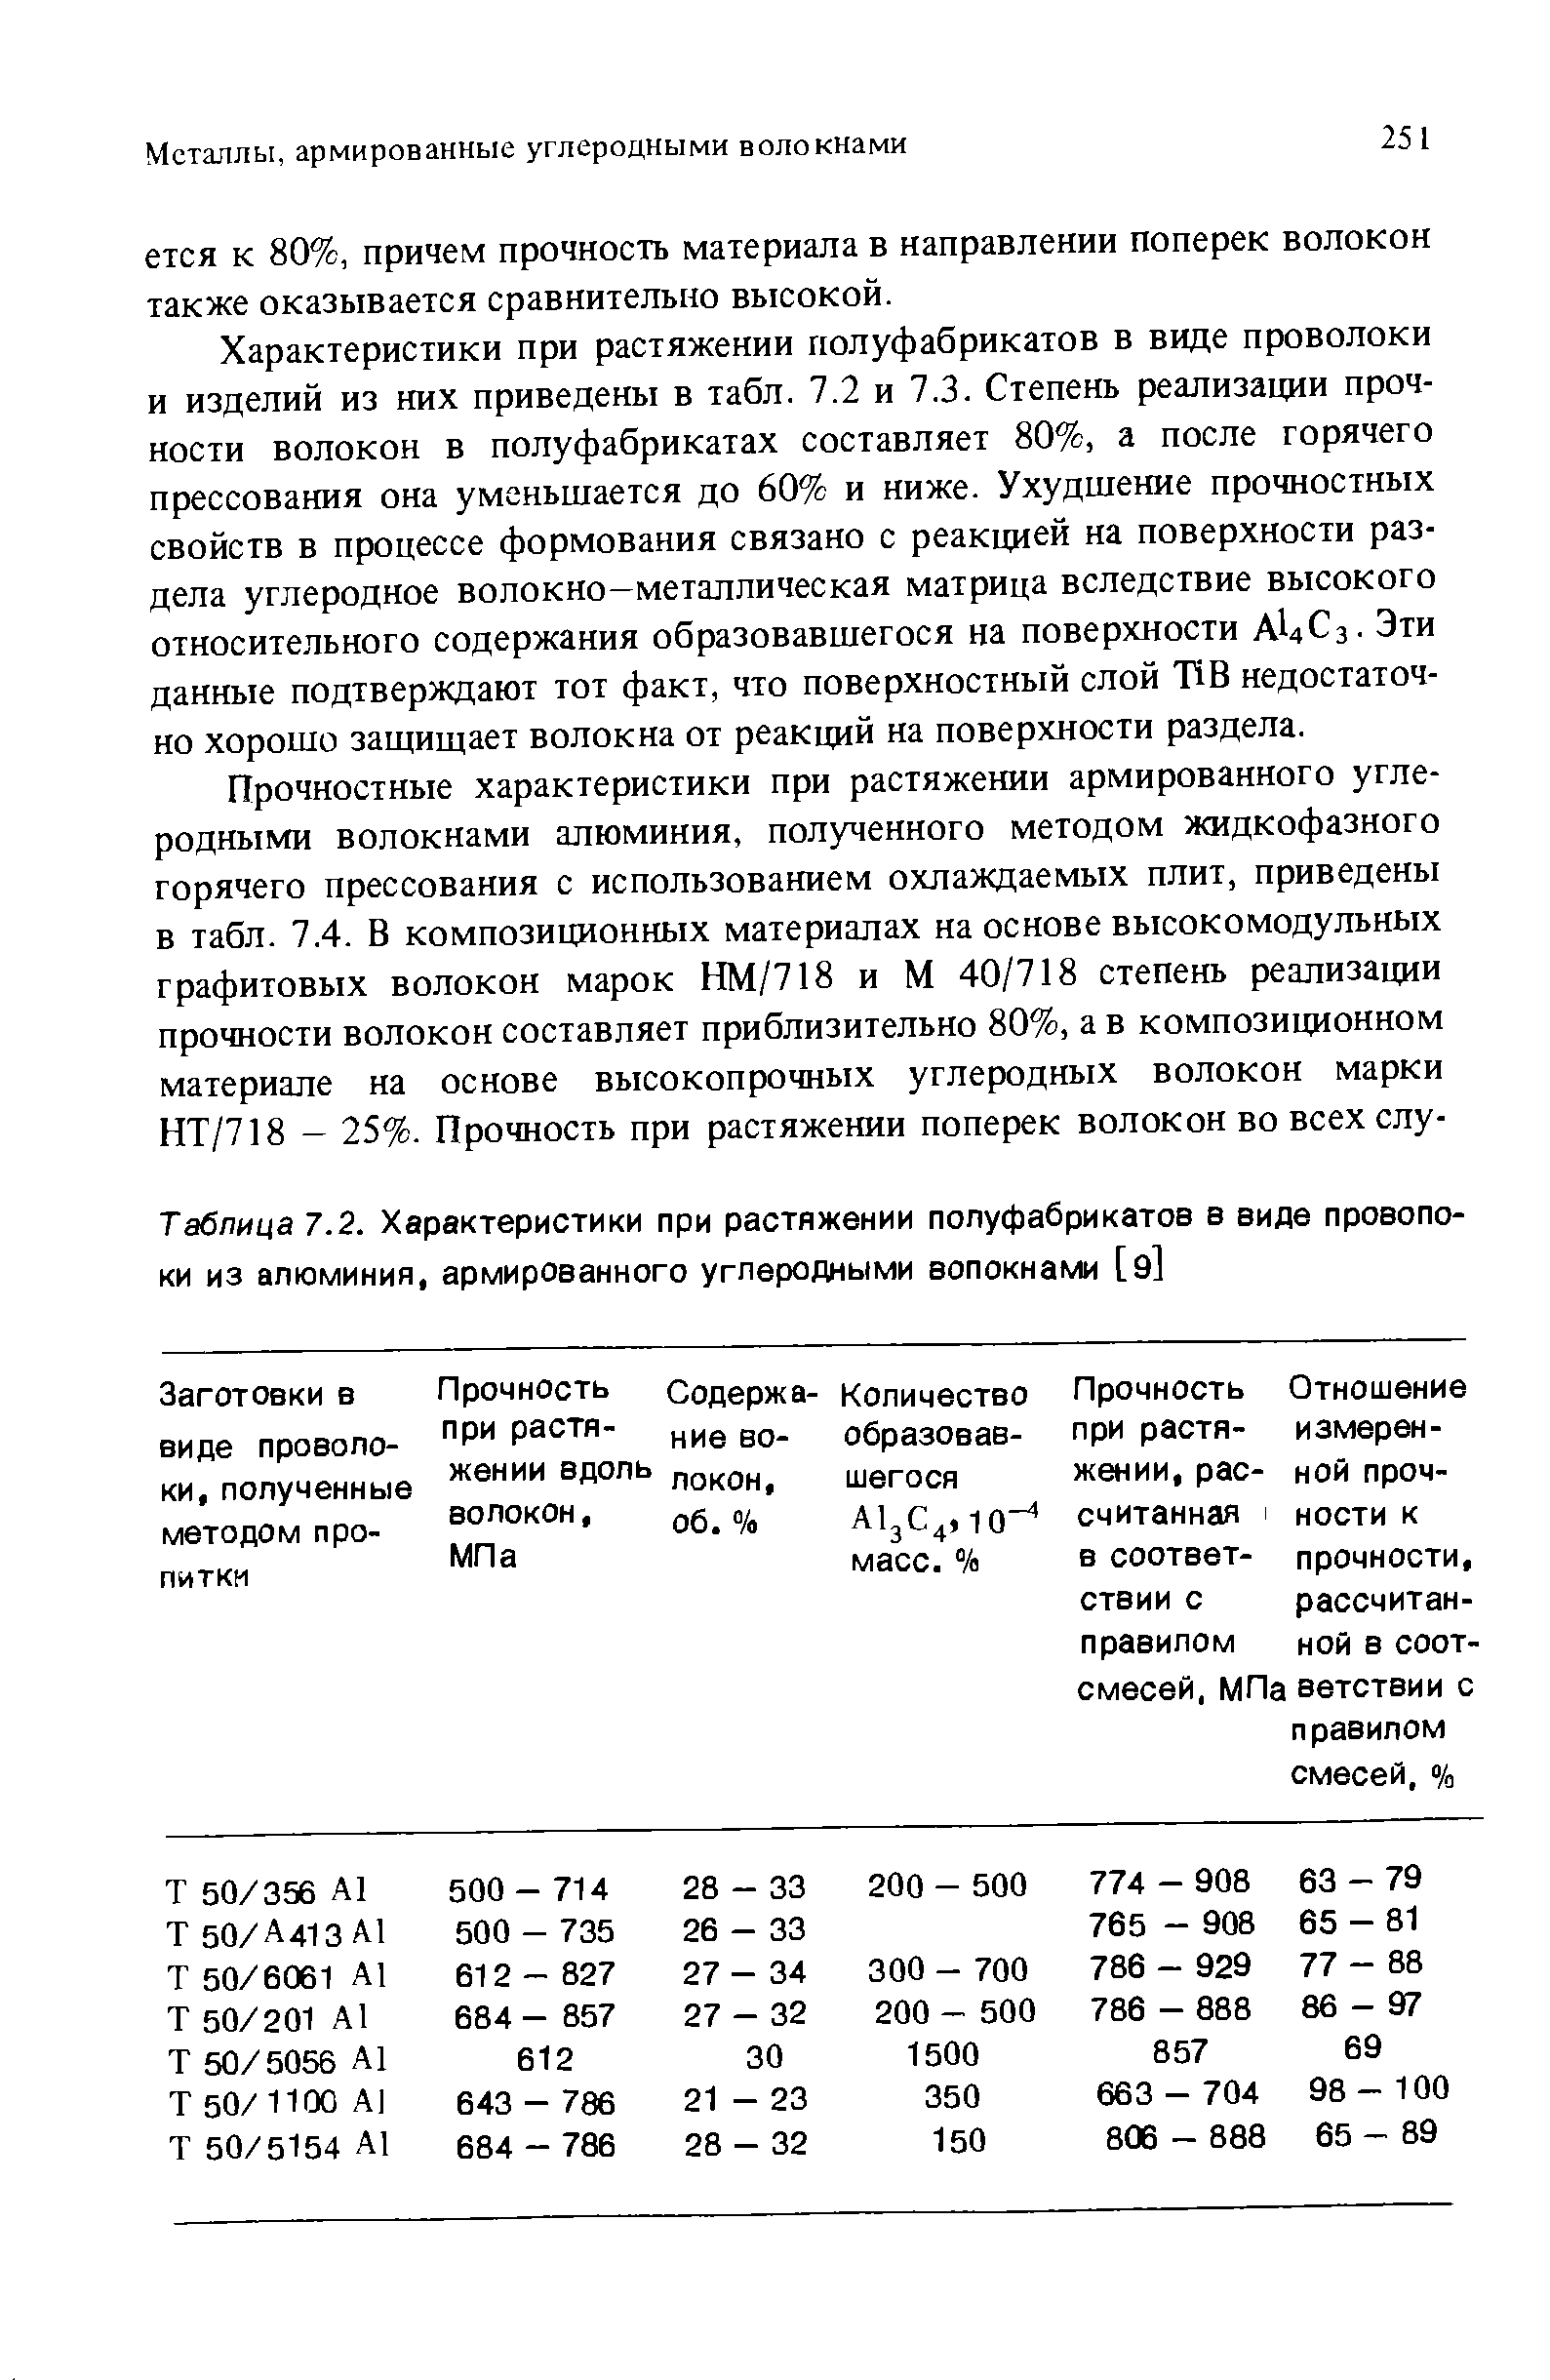 Таблица 7.2. Характеристики при растяжении полуфабрикатов в виде провопо-ки из алюминия, армированного углеродными волокнами [э]
